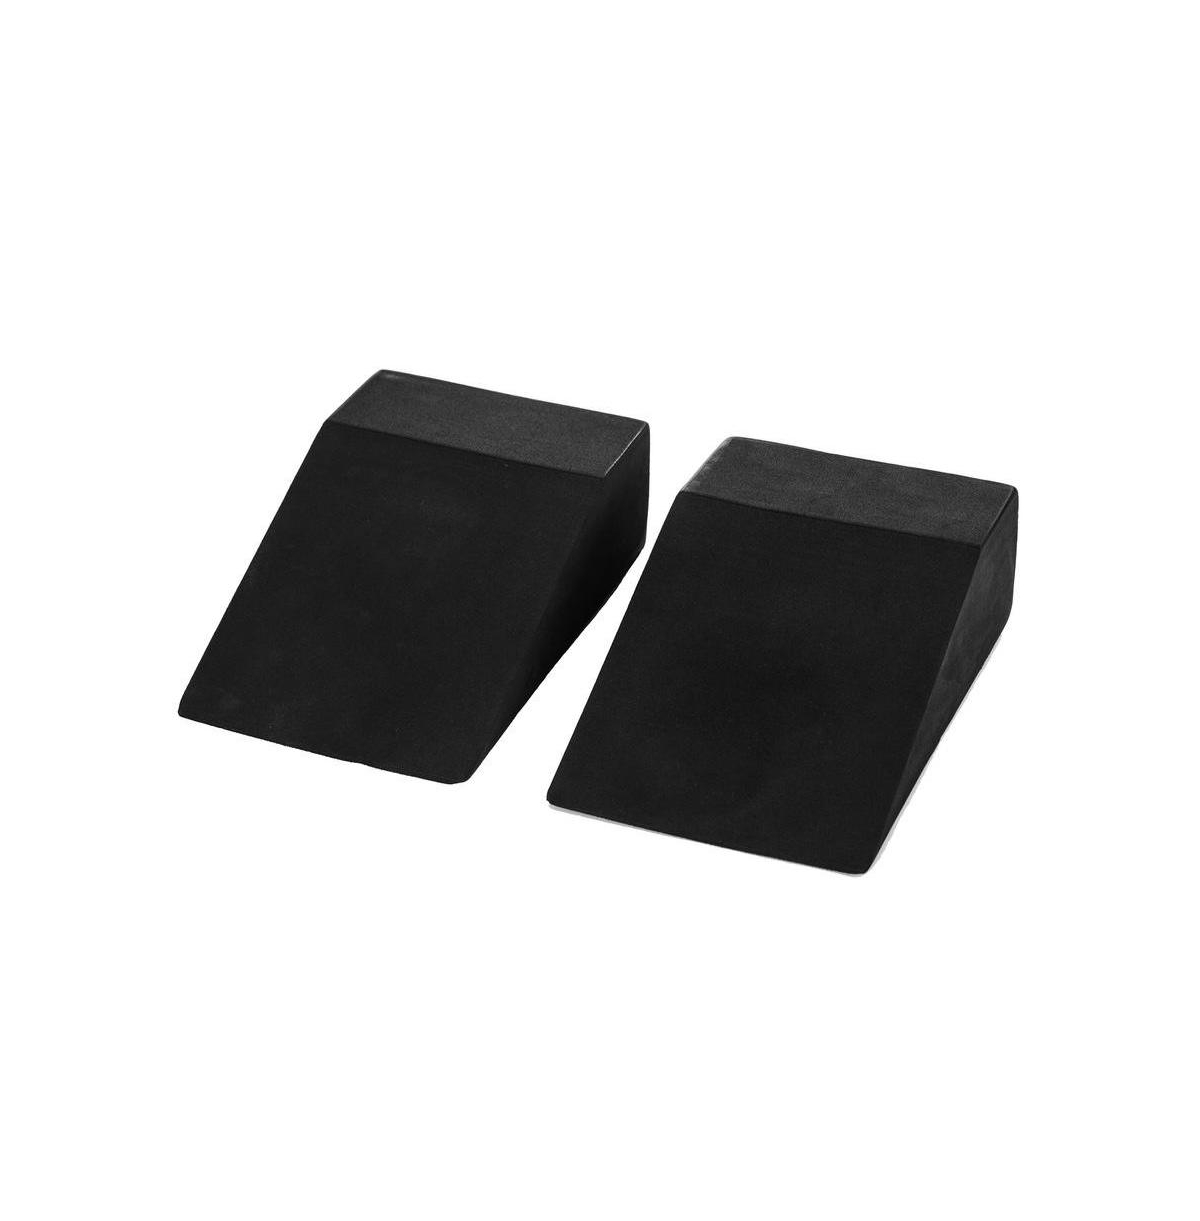 Yoga Foam Wedge Blocks, Soft Wrist Wedge, One Pair - Black